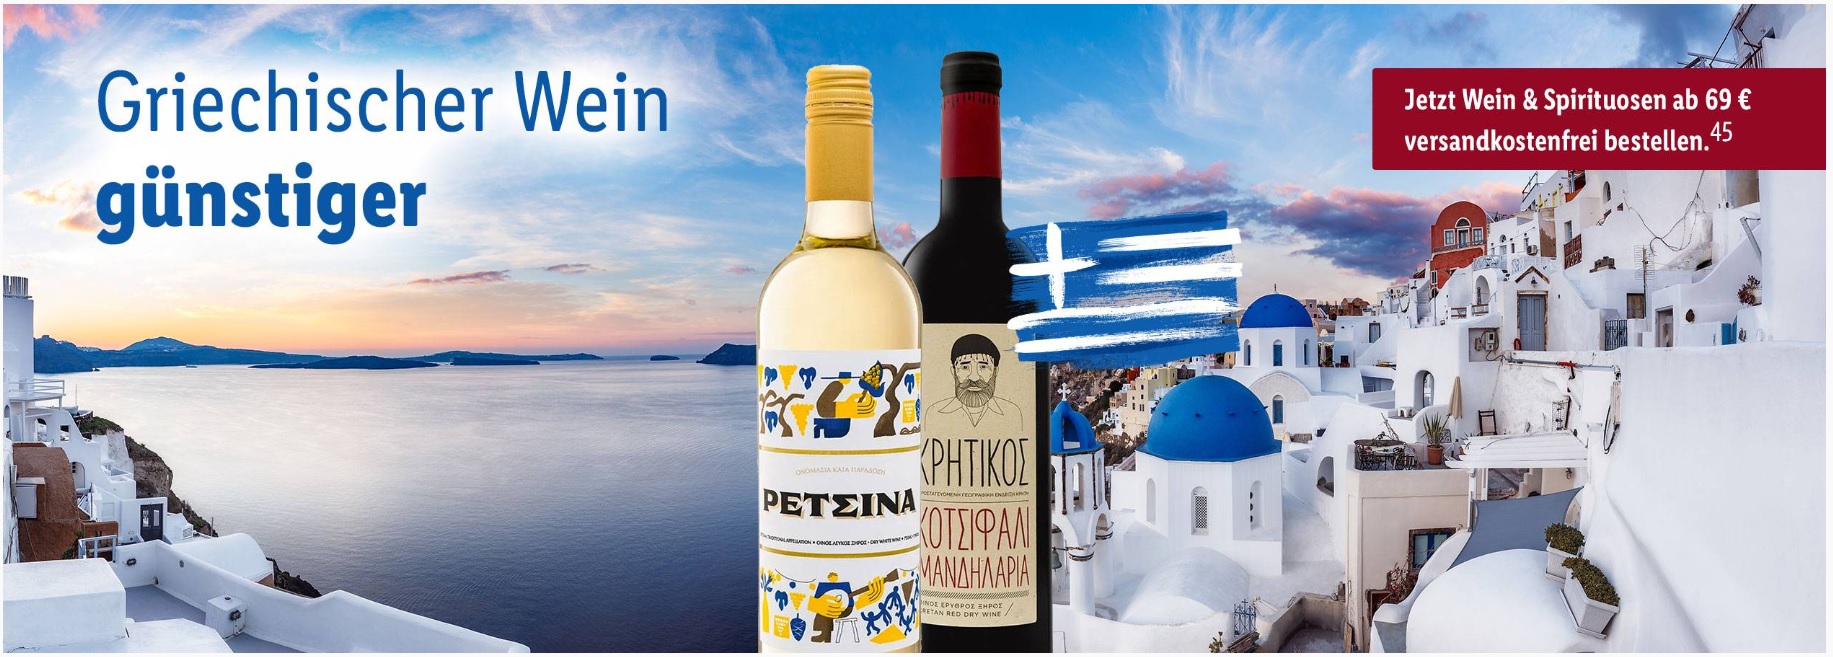 Griechische Weine und Wochen Spirituosen Super 